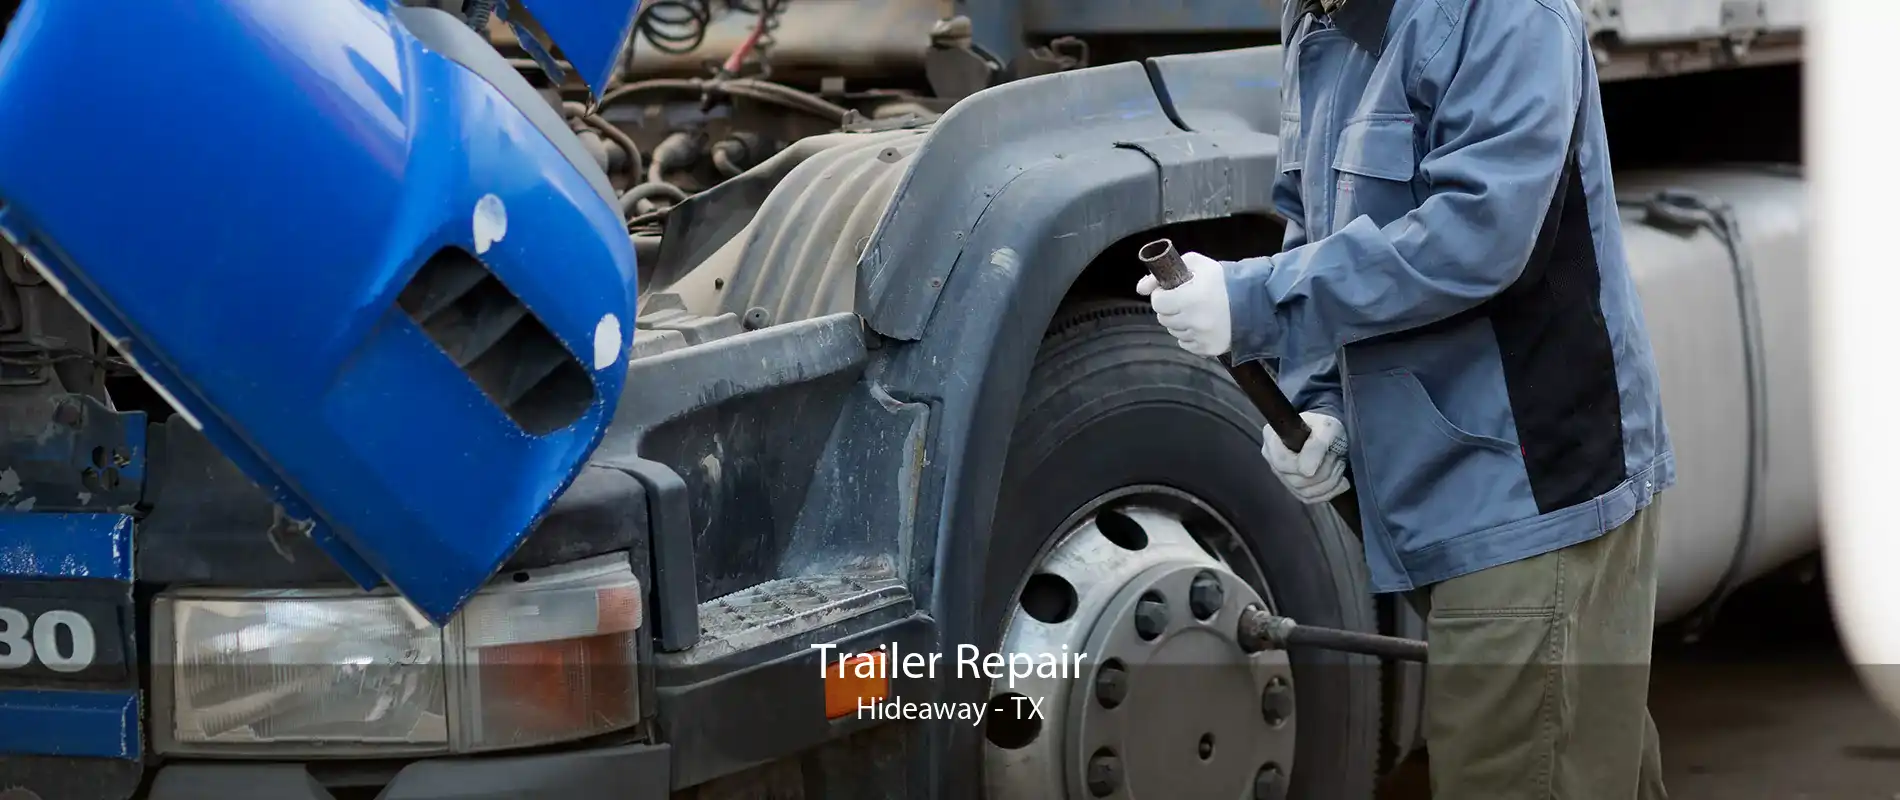 Trailer Repair Hideaway - TX